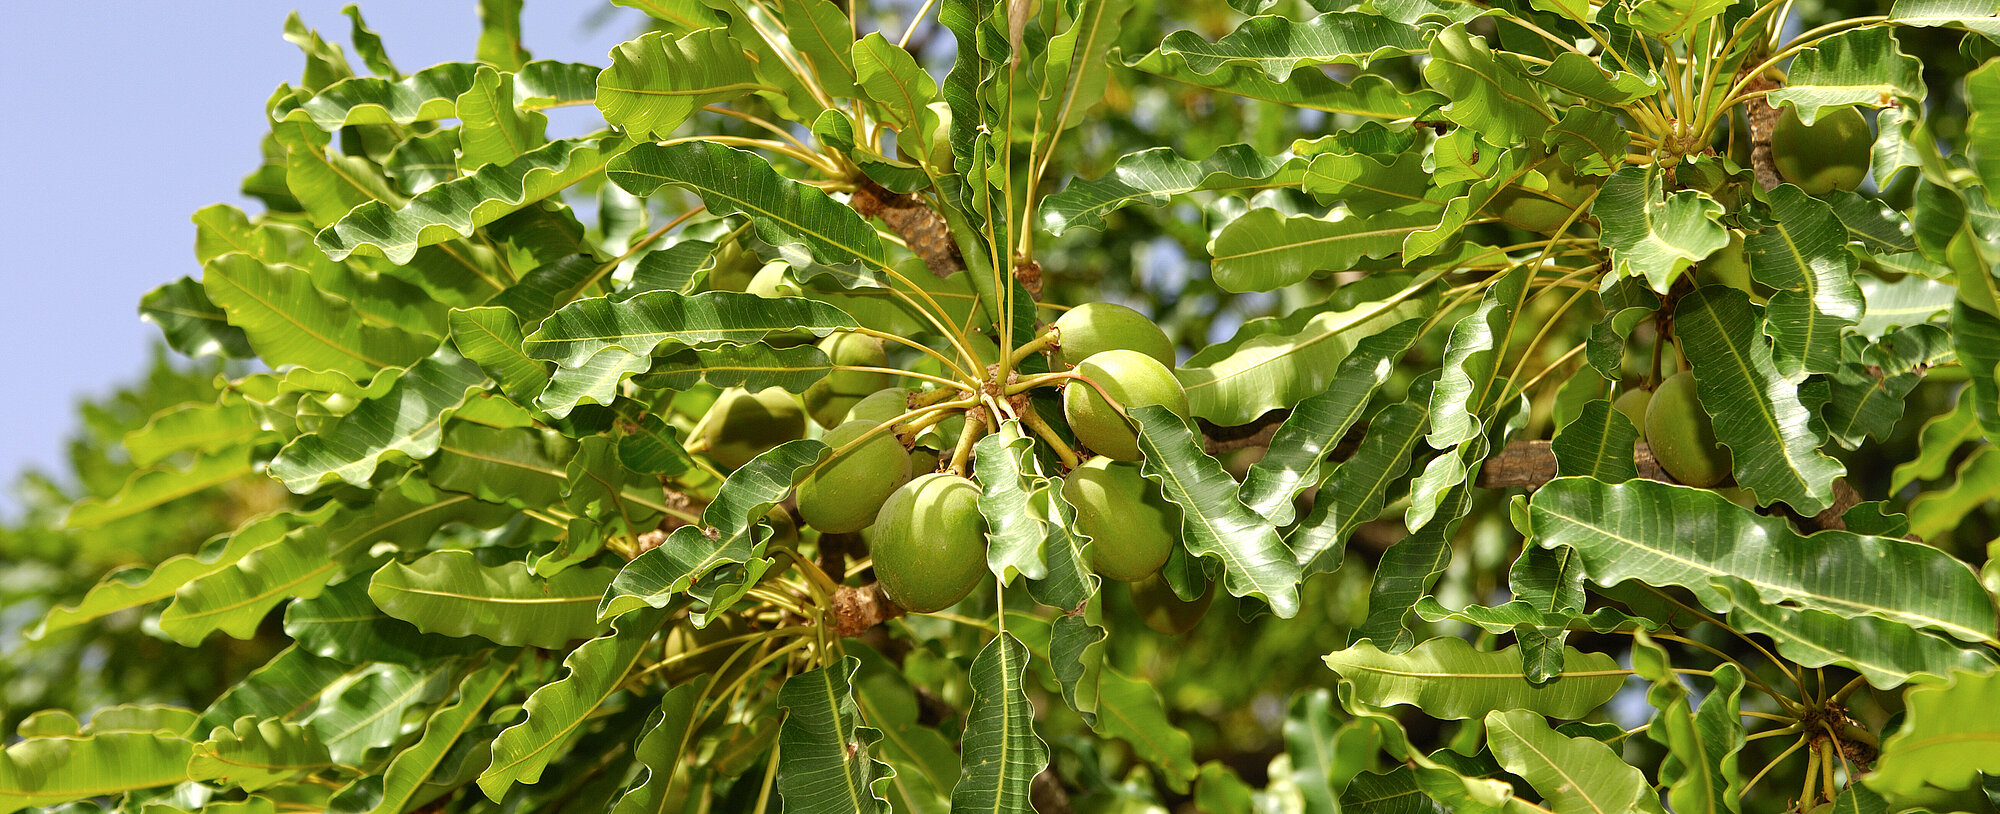 Fruits of Shea butter tree, Karite tree, Vitellaria paradoxa, syn. Butyrospermum parkii, B. paradoxa, Burkina Faso